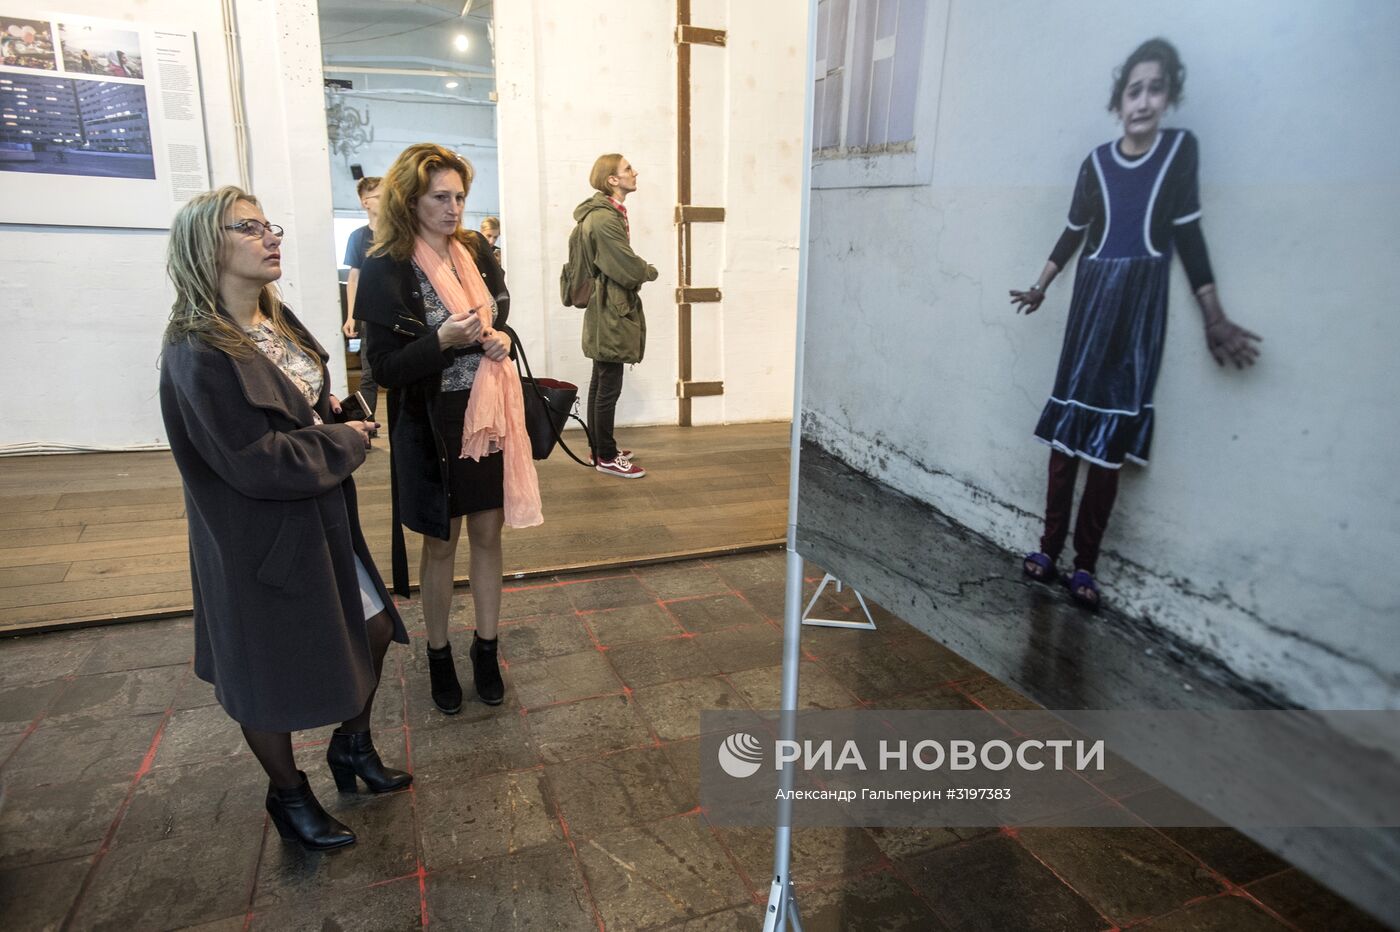 Открытие выставки World Press Photo в Санкт-Петербурге